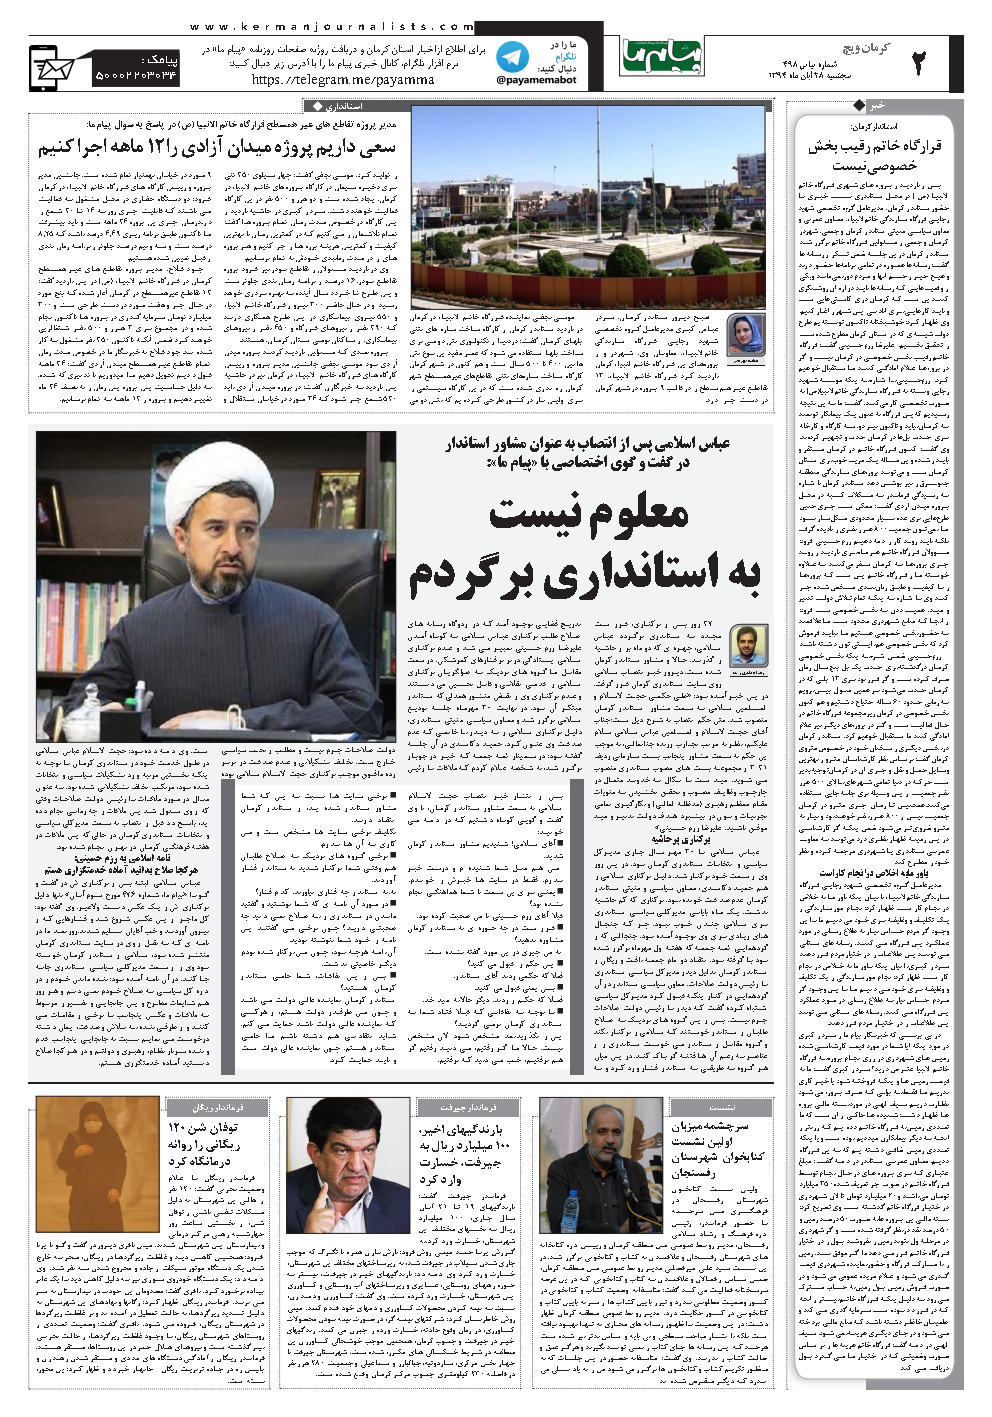 صفحه کرمان ویچ شماره شماره 498 روزنامه پیام ما